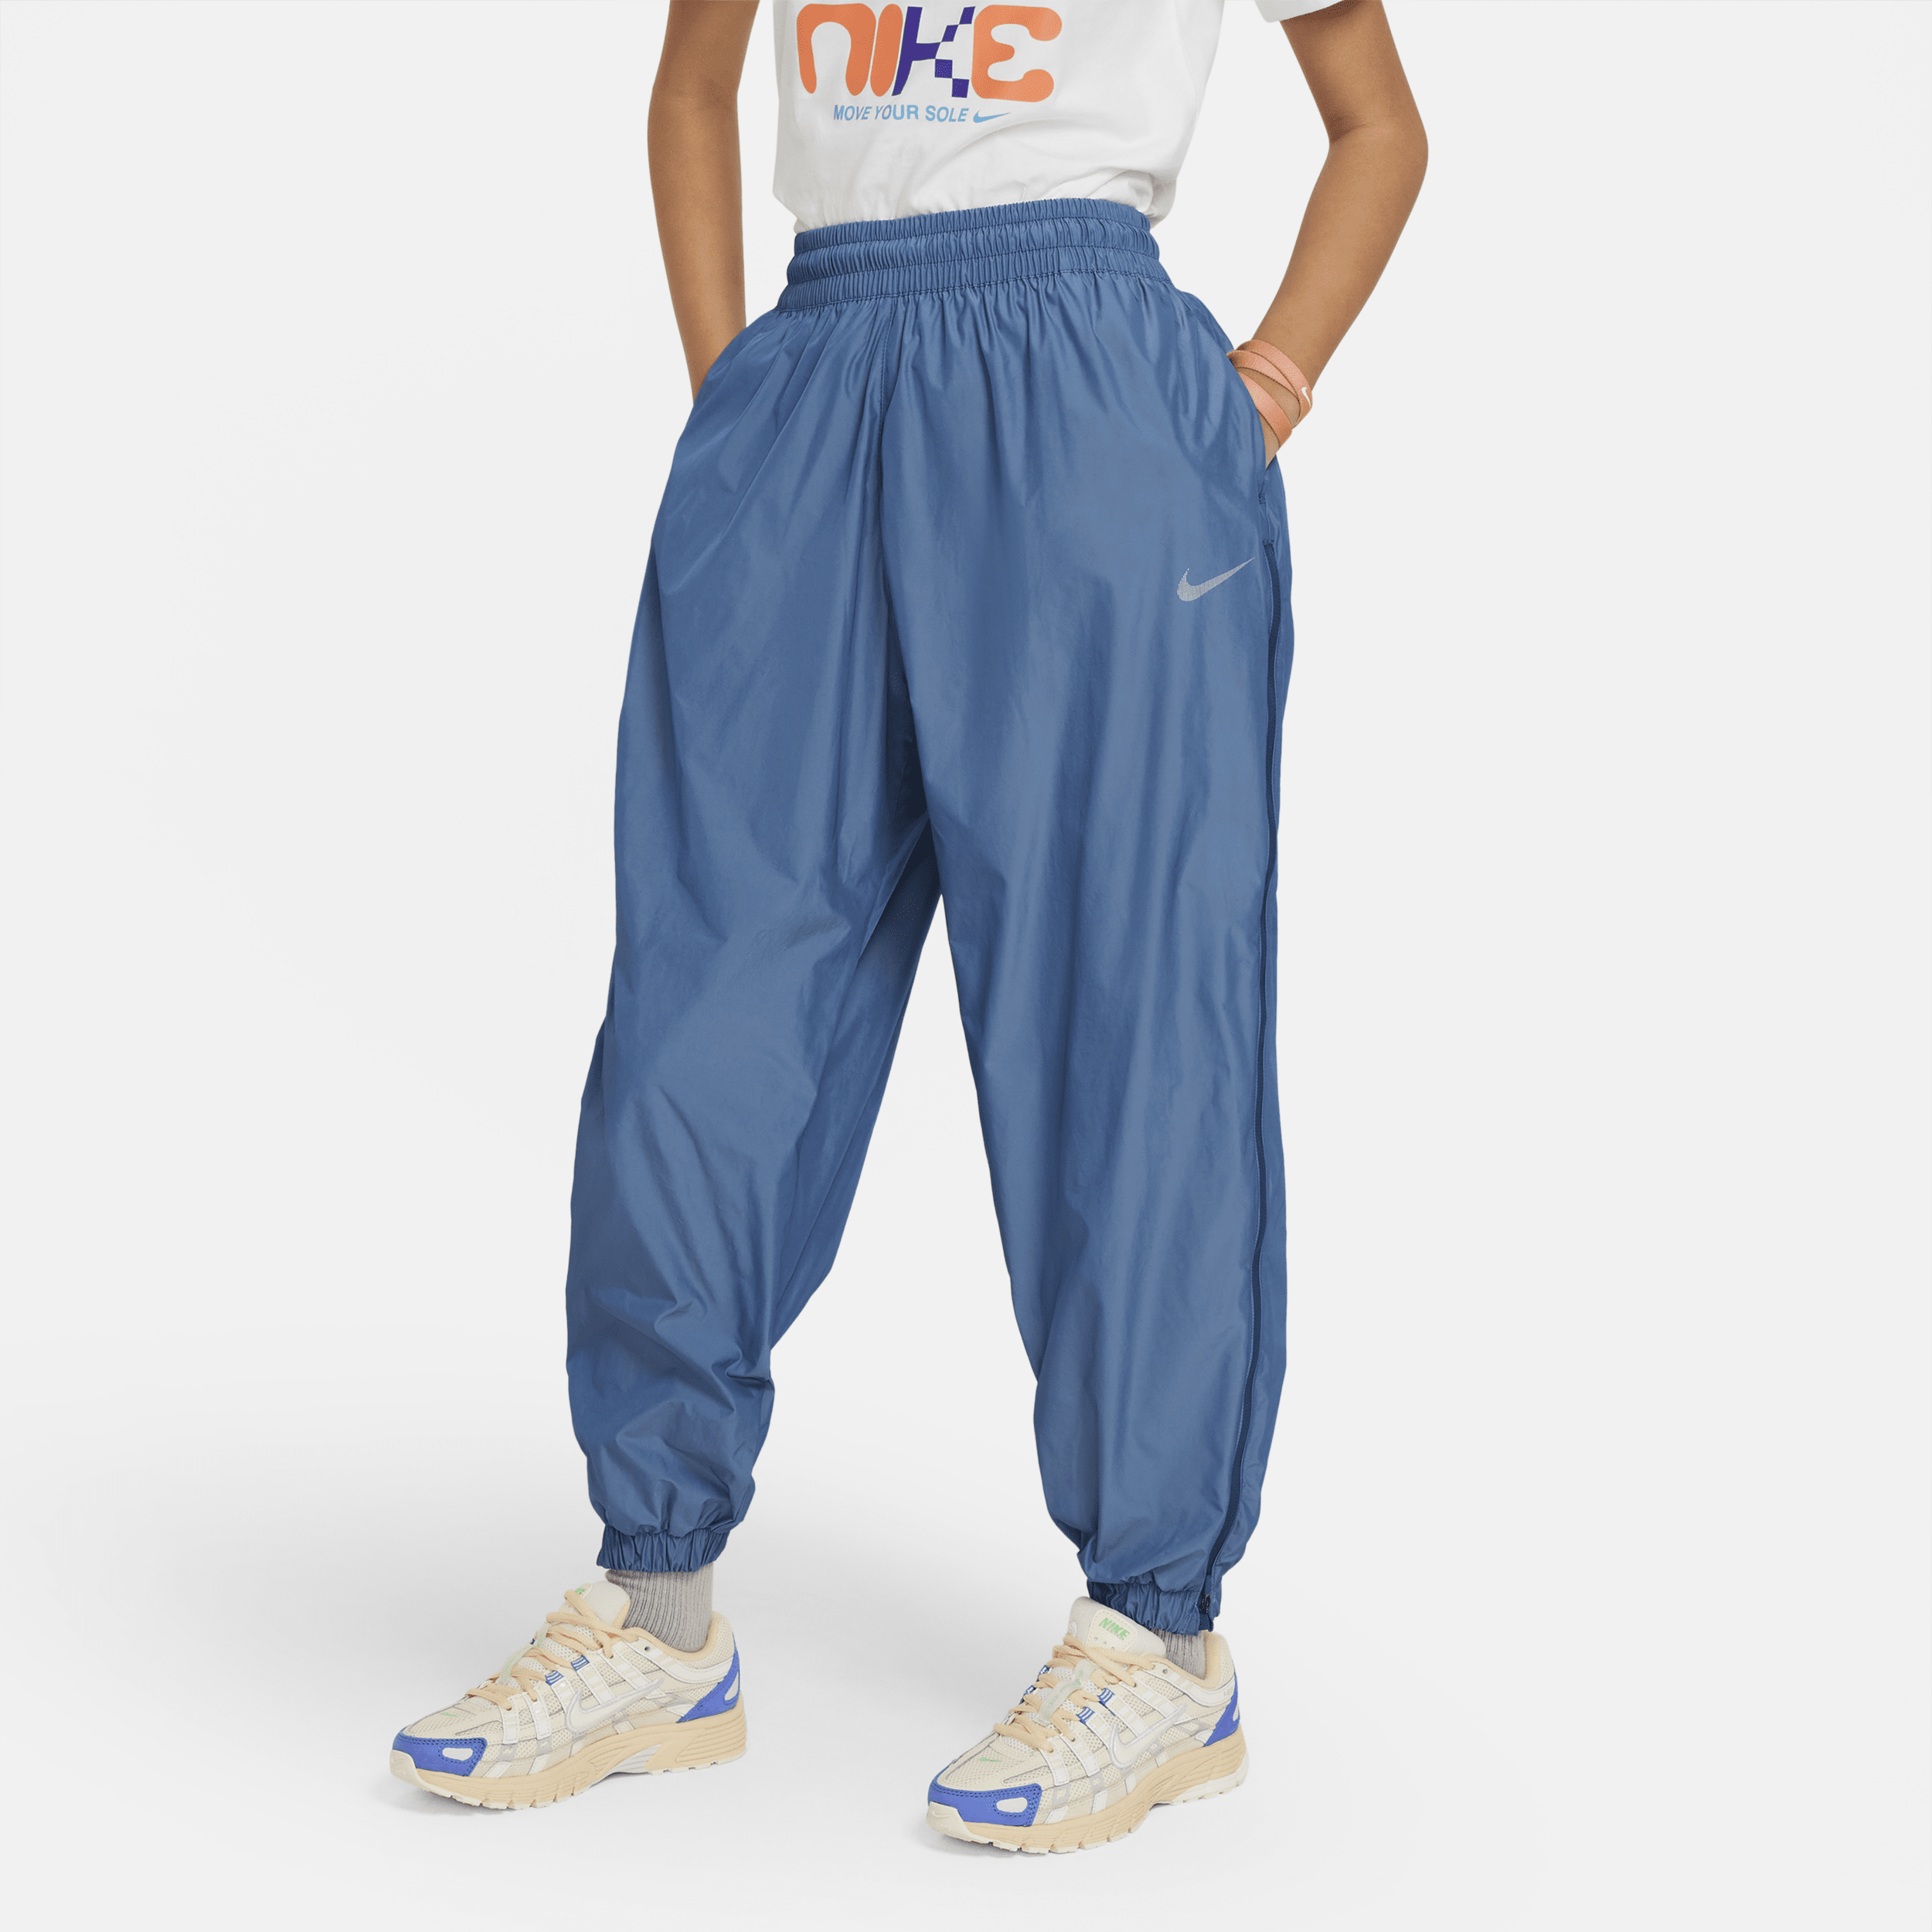 Vævede Nike Sportswear-bukser til større børn (piger) - blå